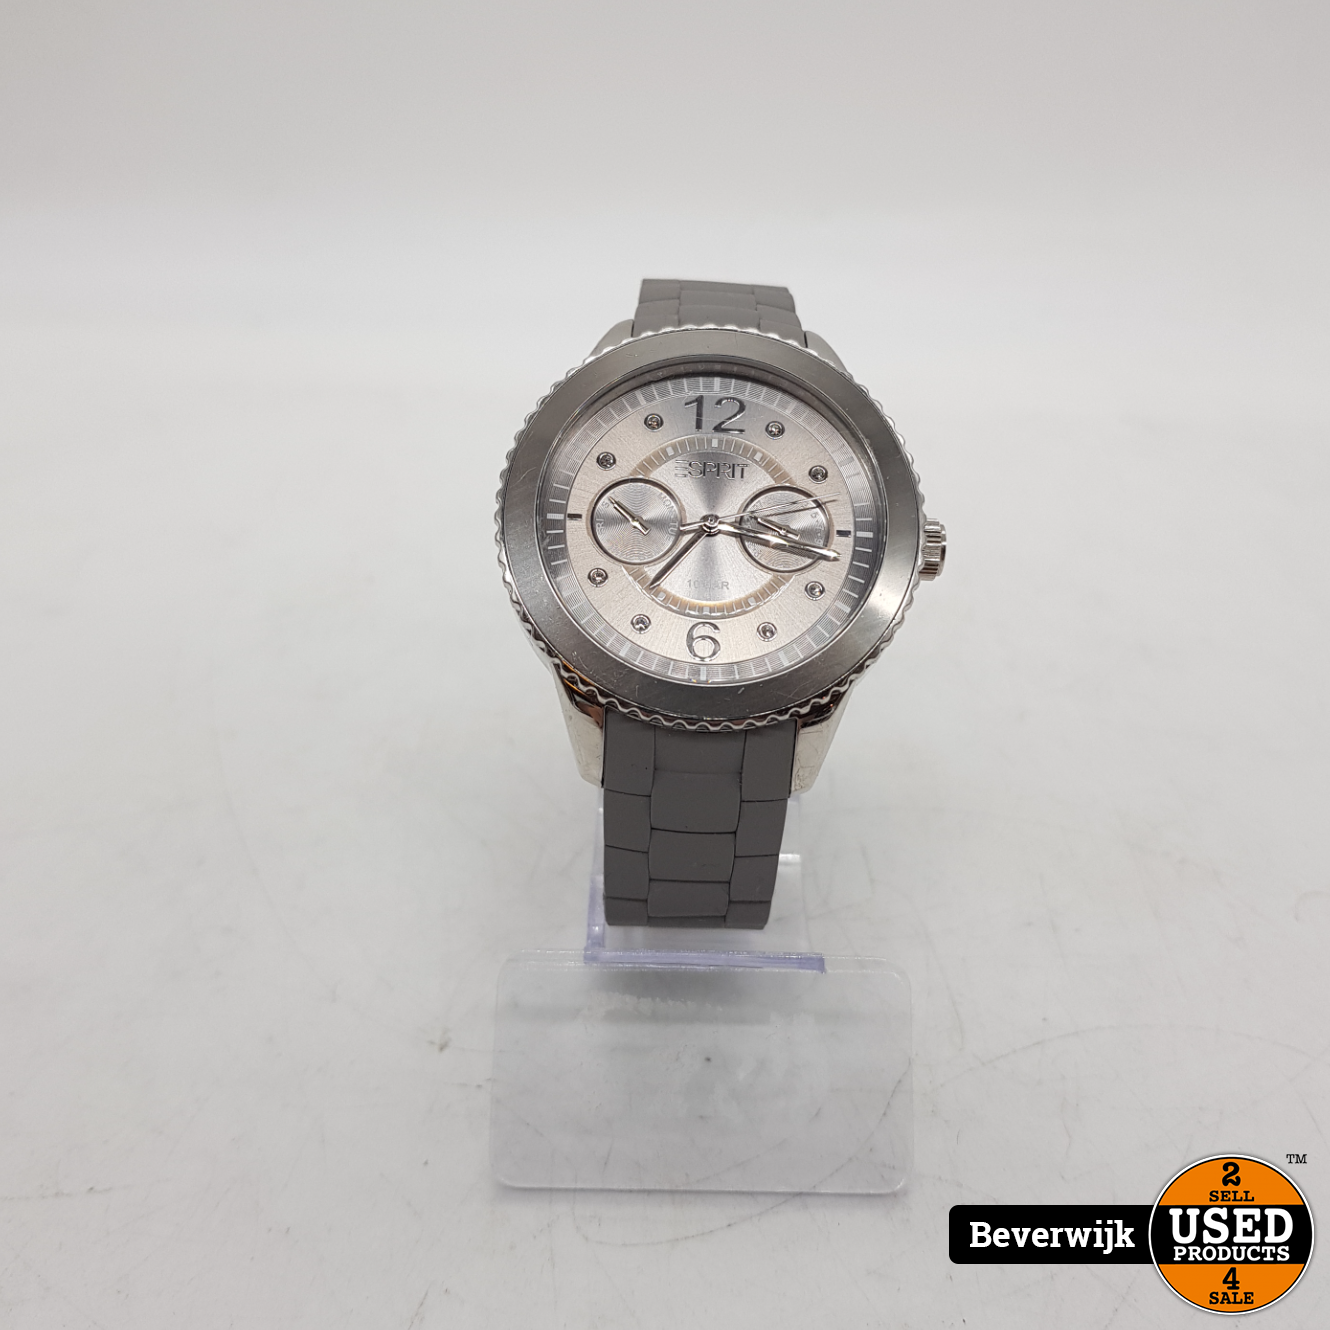 Mars engel Emotie ESPRIT 105332 Unisex Horloge - In Nette Staat - Used Products Beverwijk